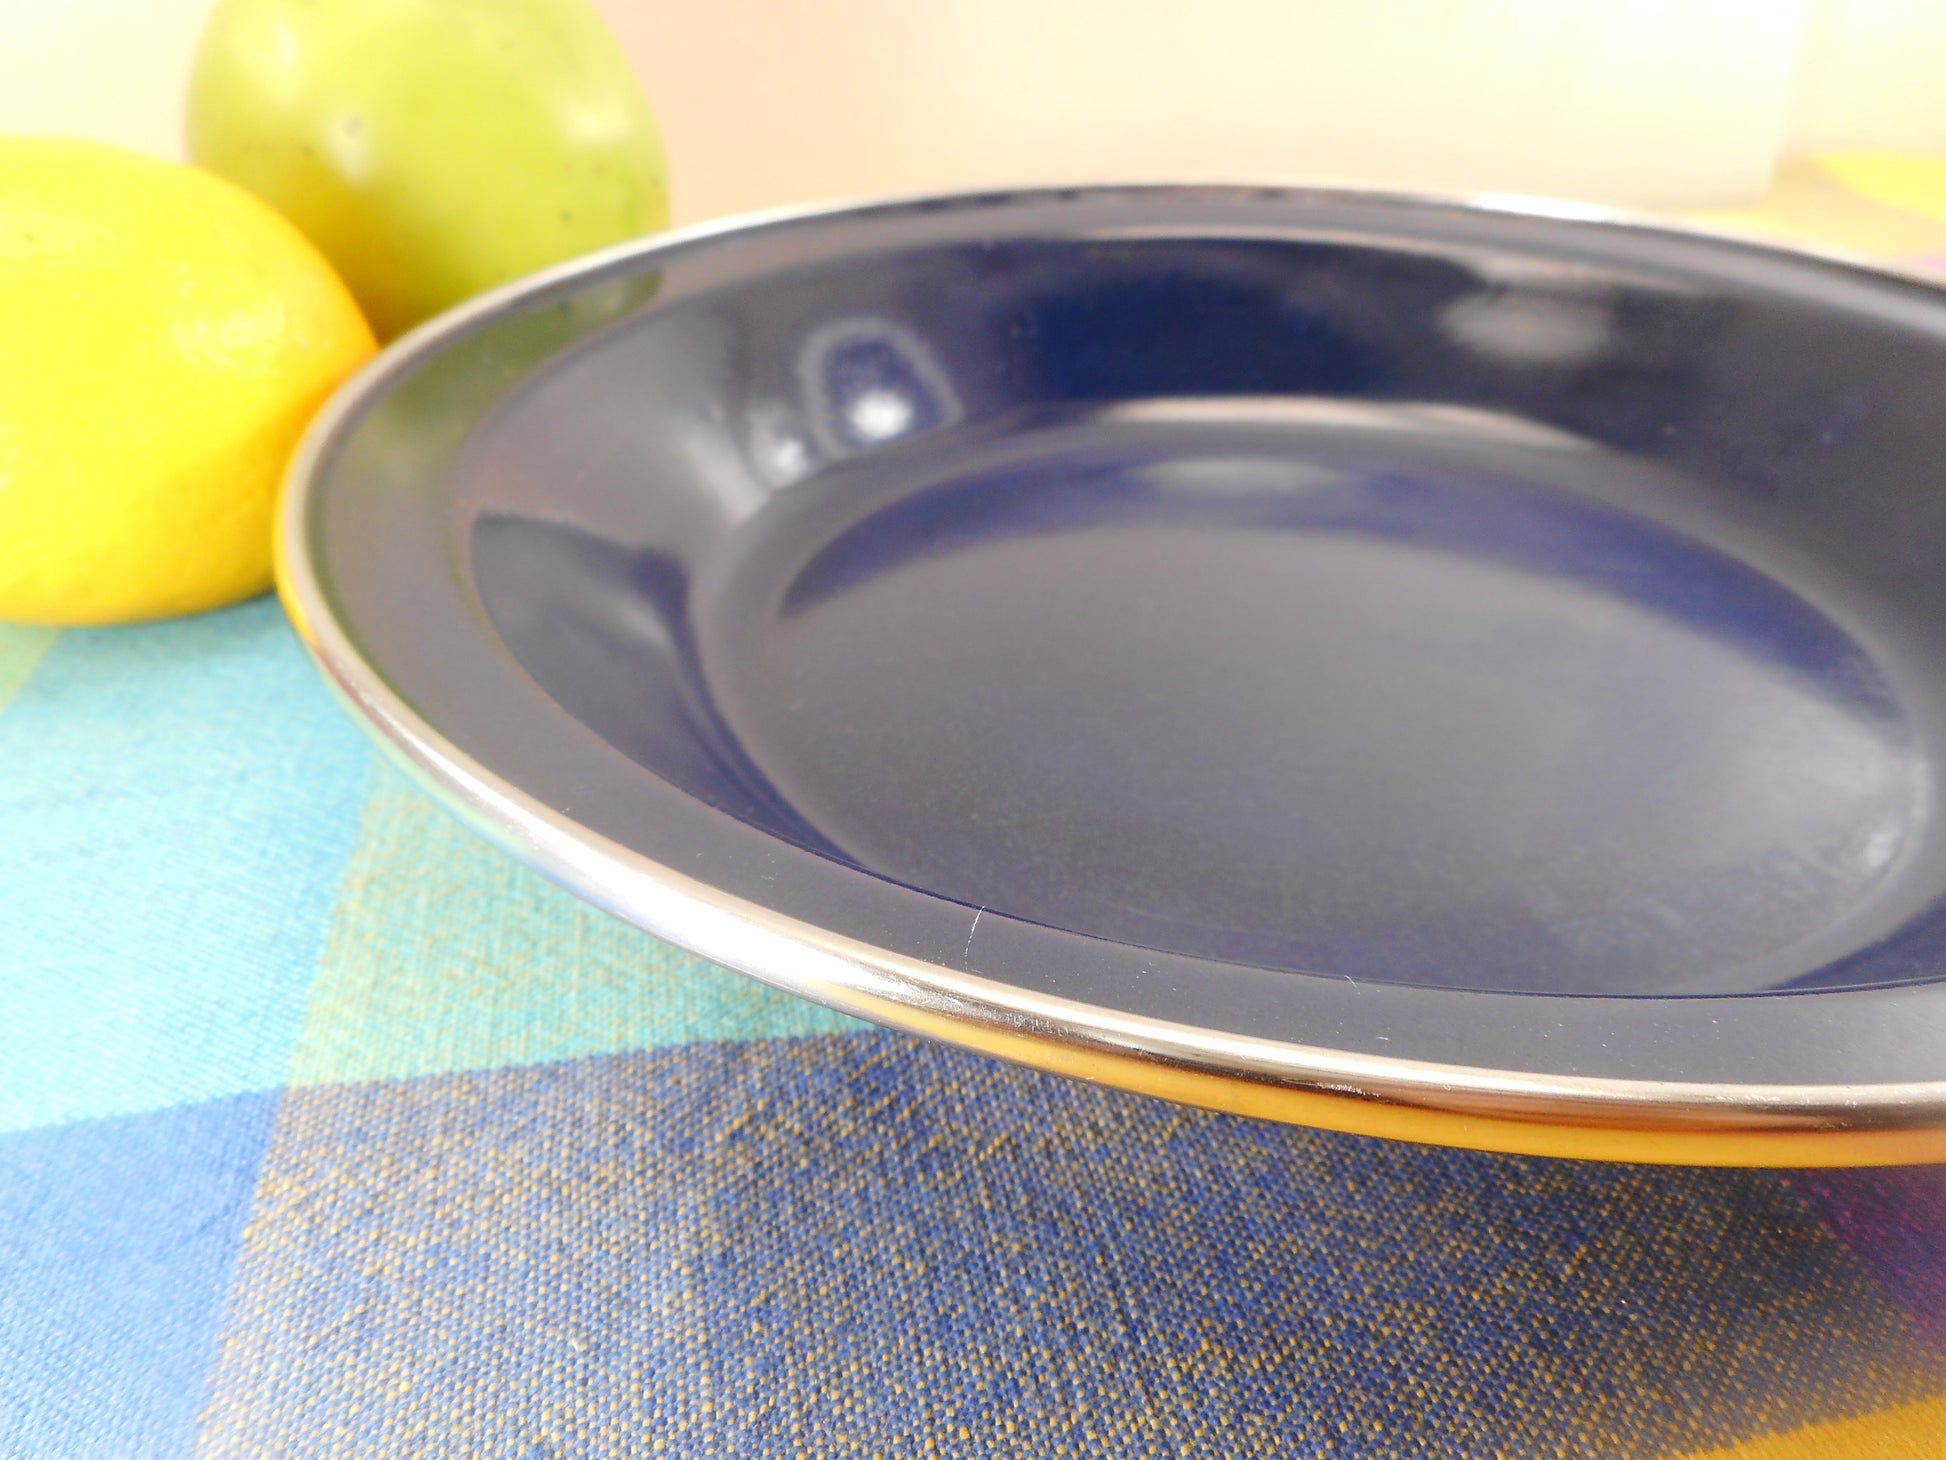 Unbranded Blue Enamelware 10" Pie Plate Pan Dish - Stainless Rim Vintage